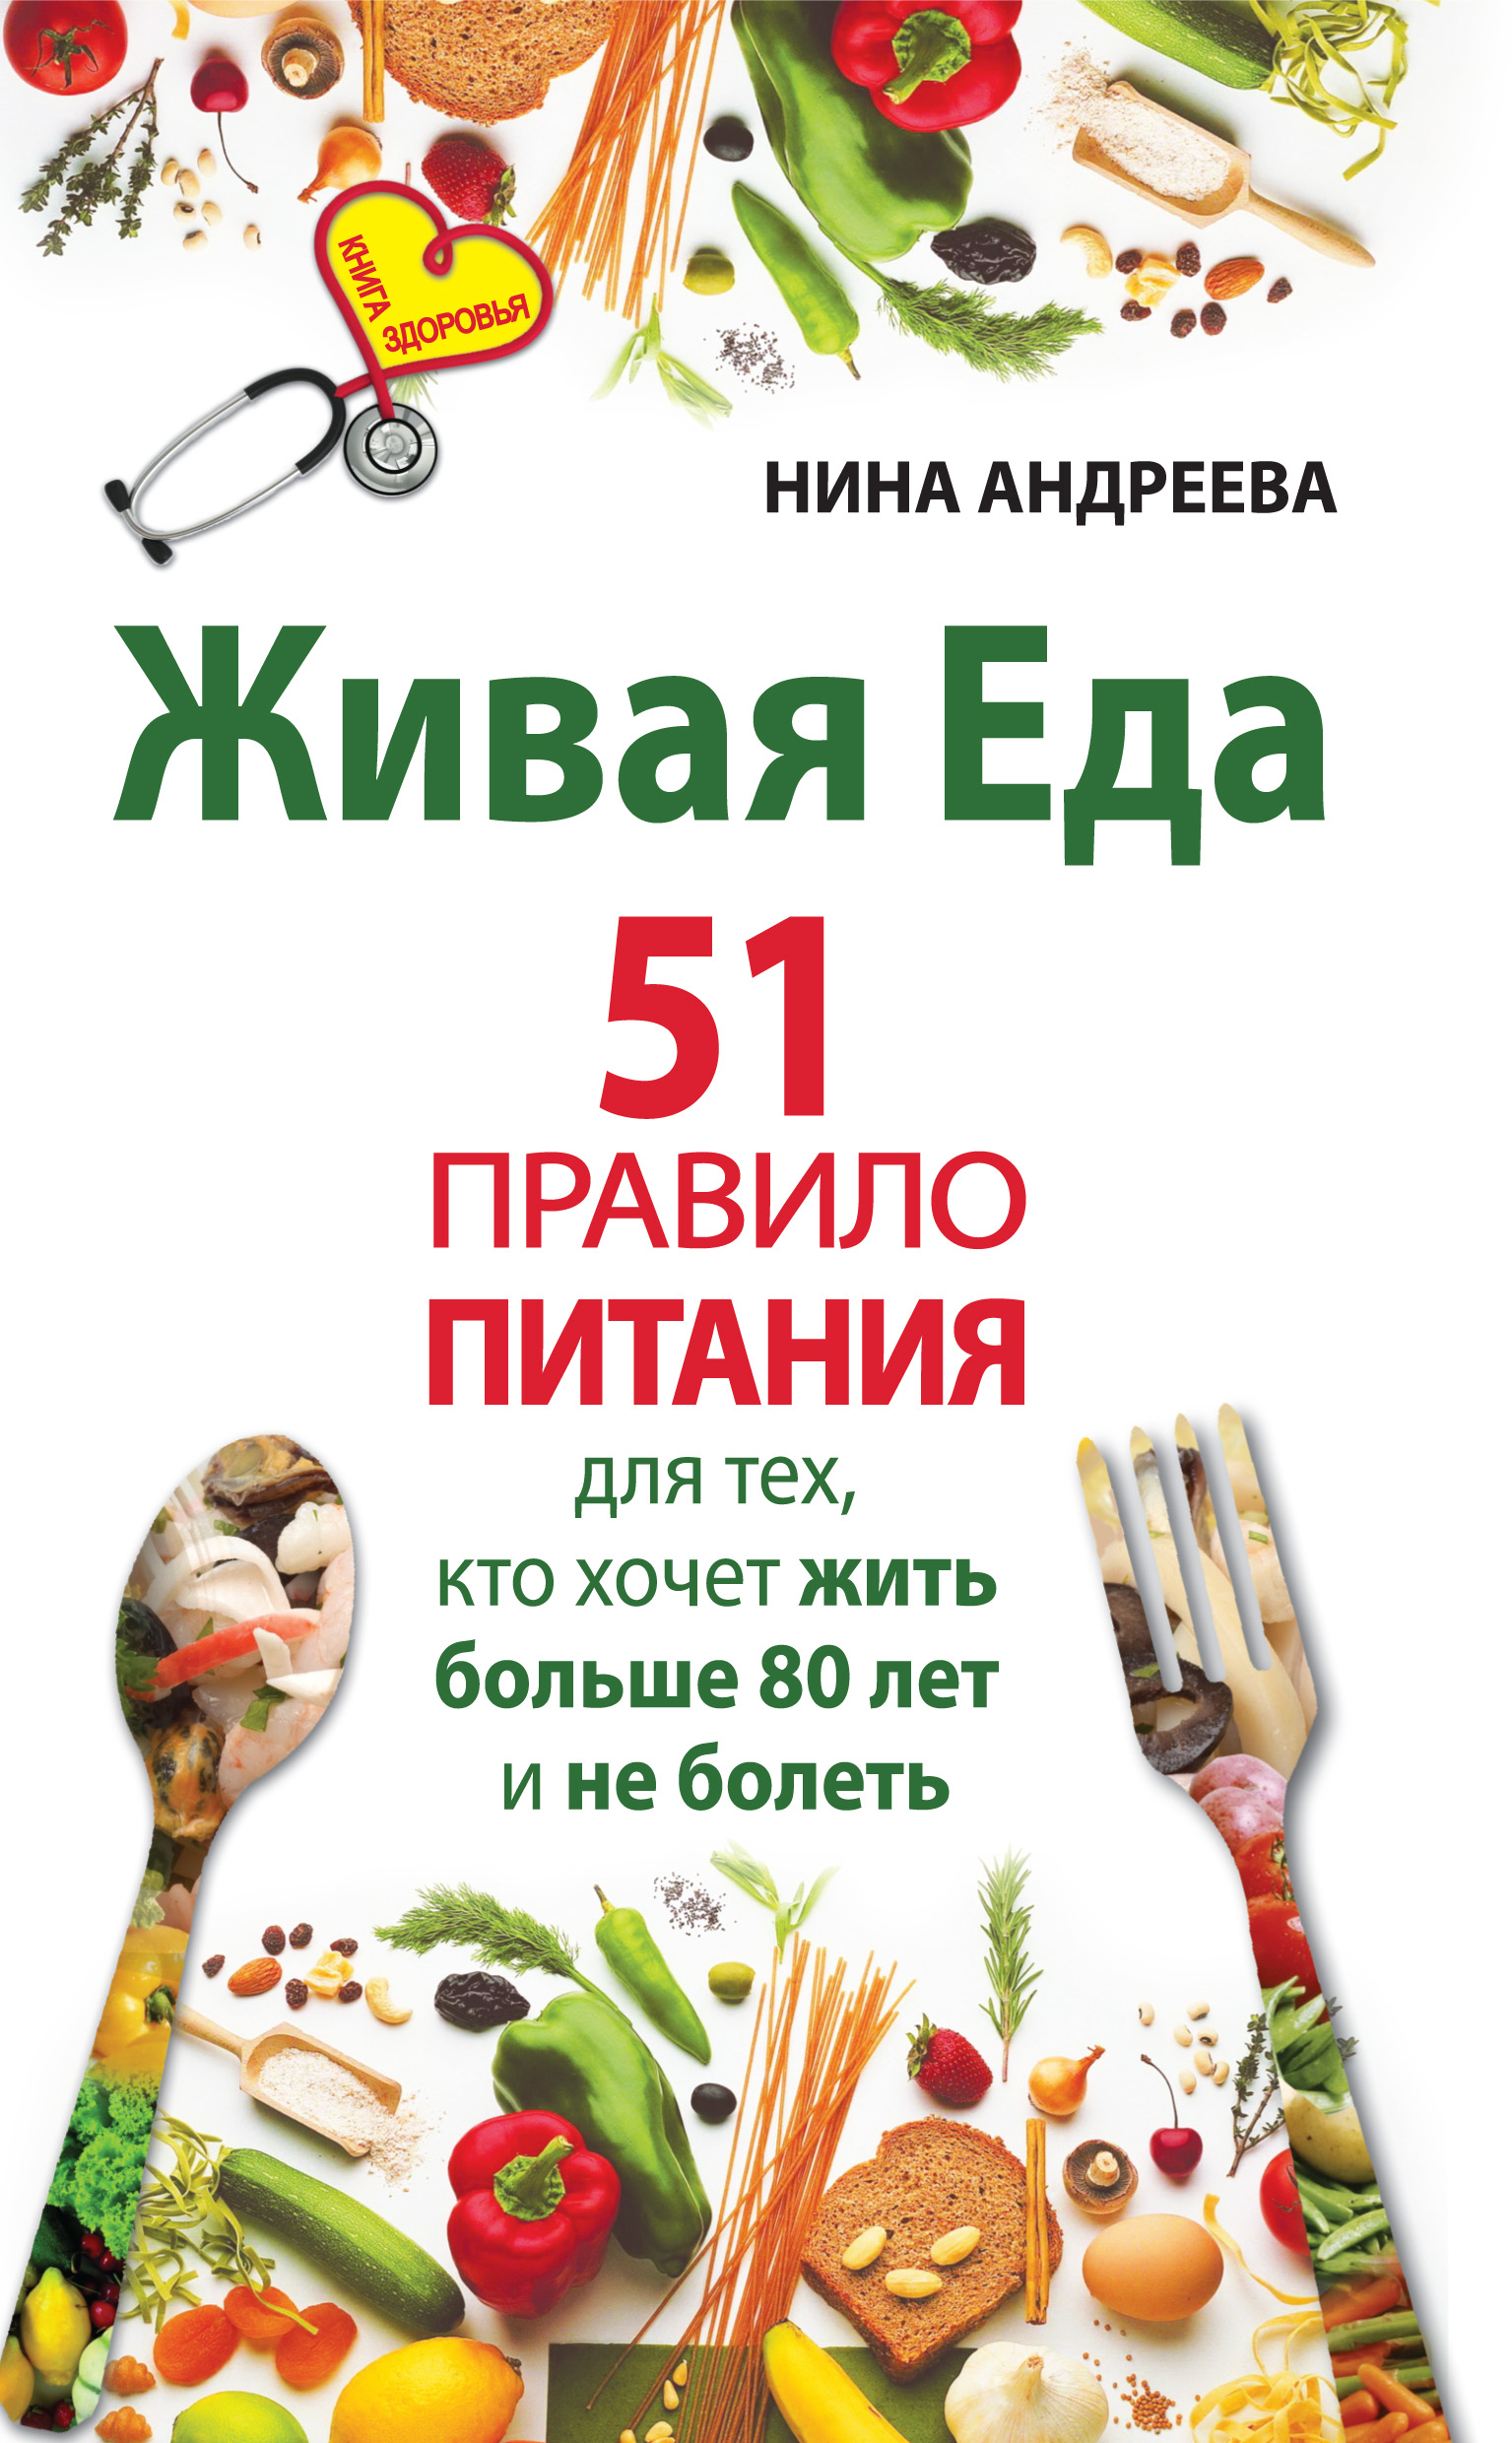 Нина Андреева «Живая еда. 51 правило питания для тех, кто хочет жить больше 80 лет и не болеть»